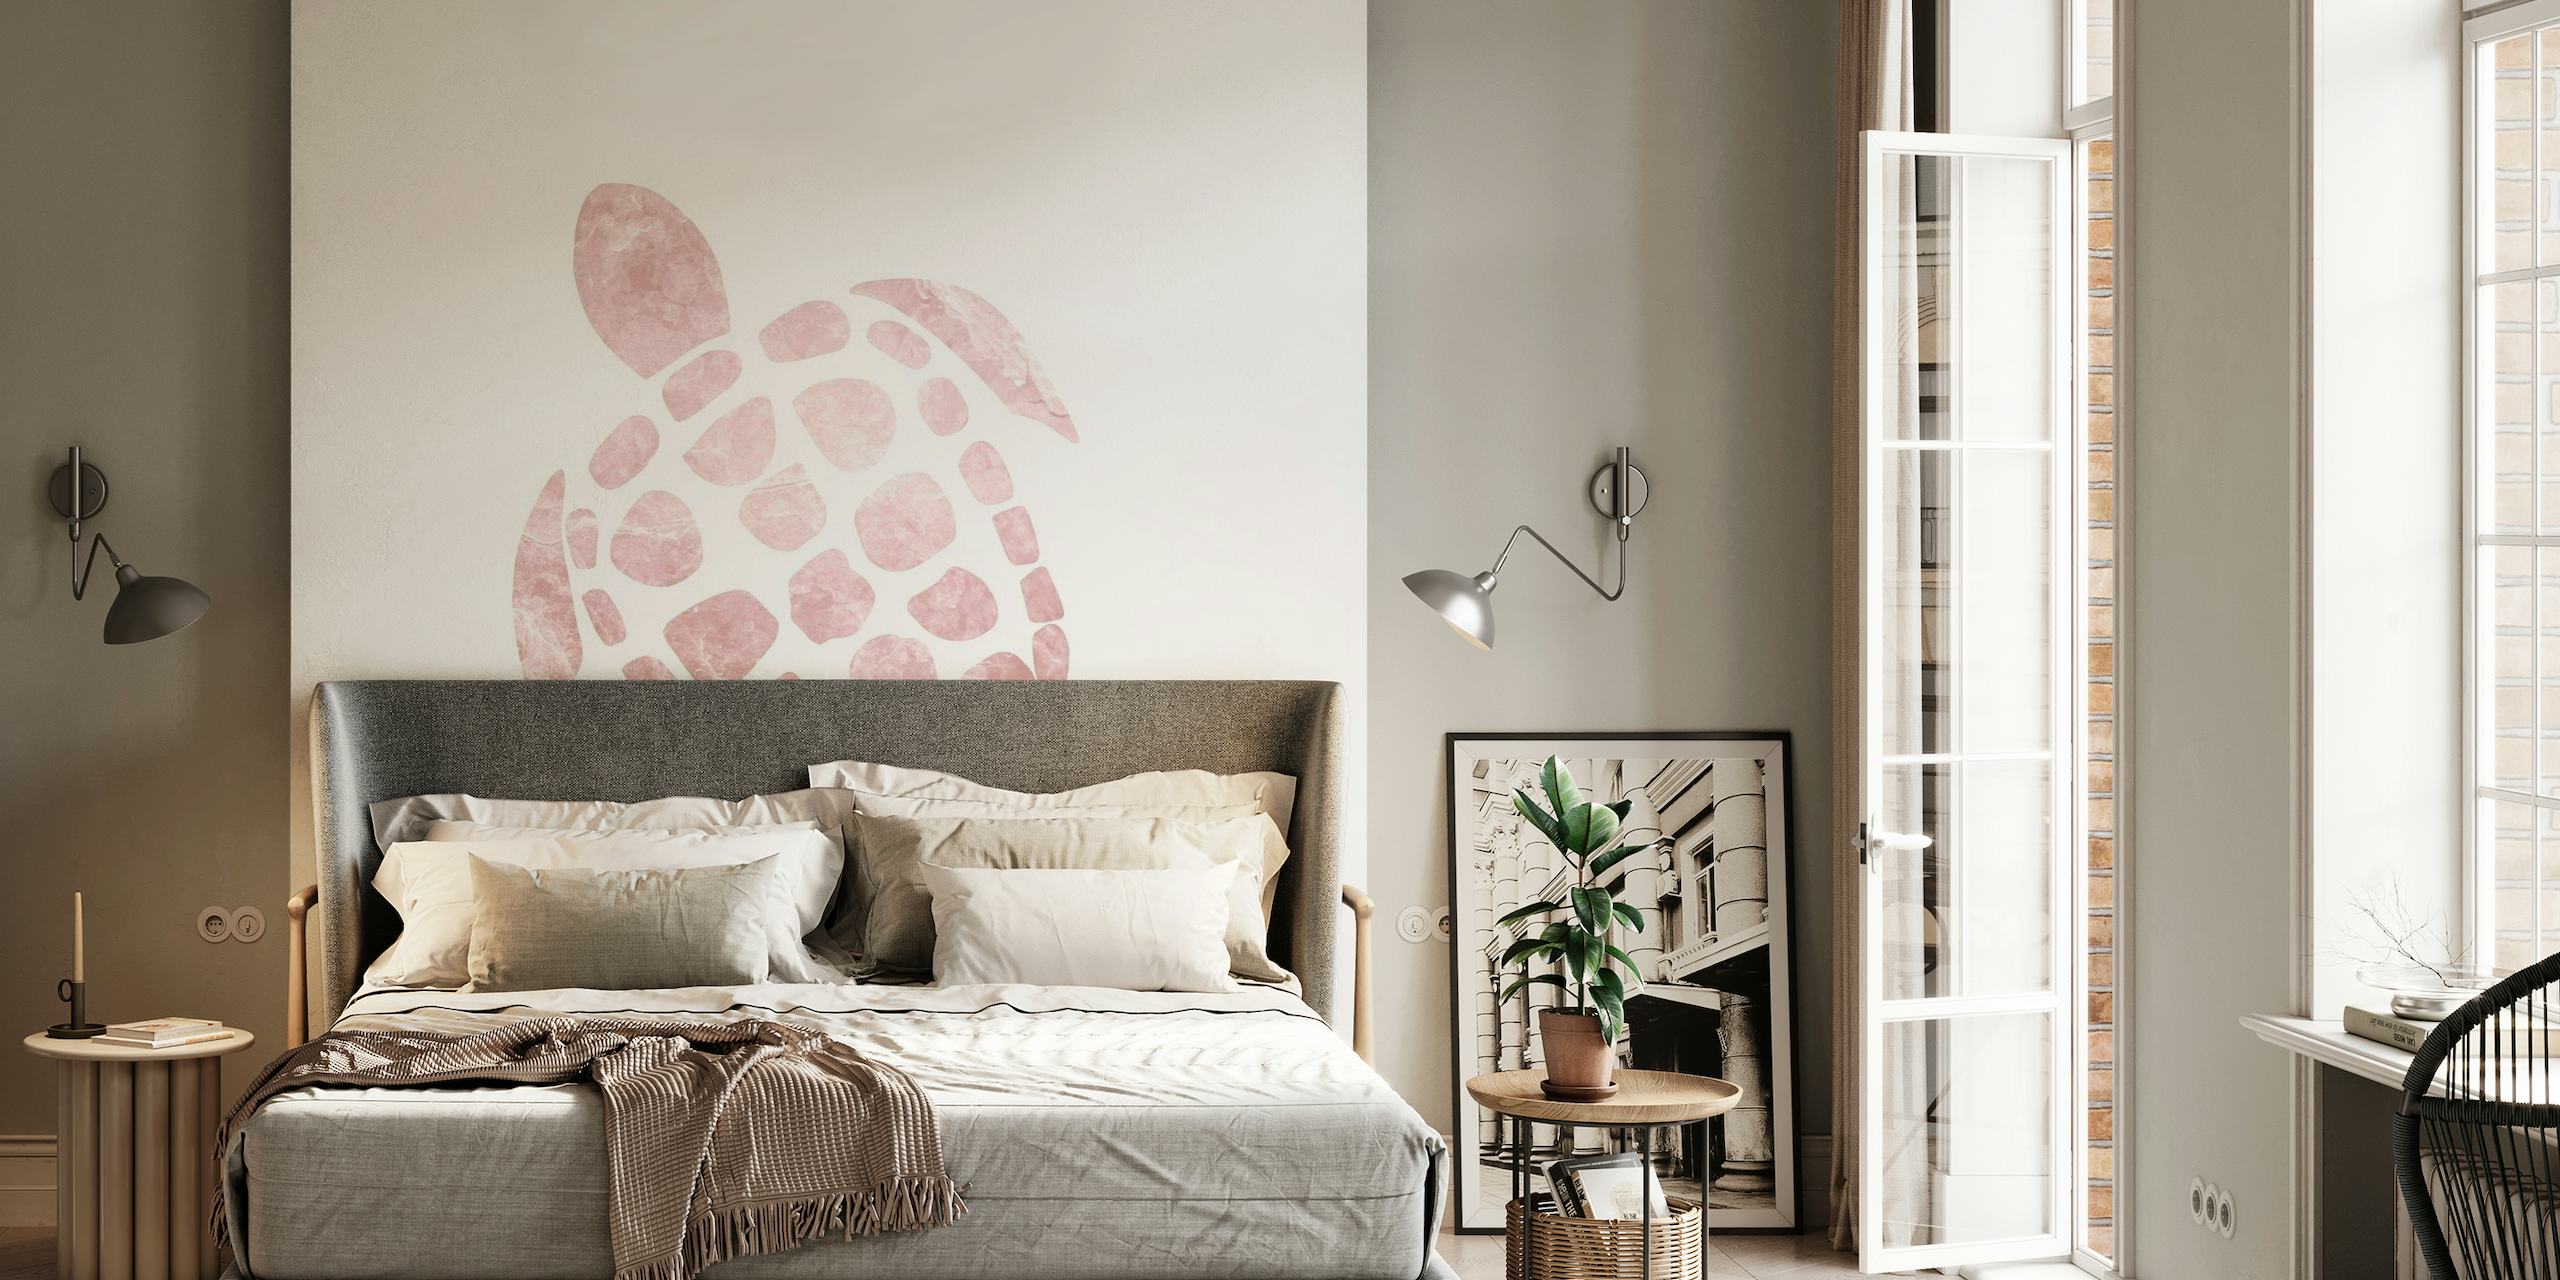 Minimalistische roze zeeschildpad muurschildering illustratie op een witte achtergrond, perfect voor een serene huisinrichting